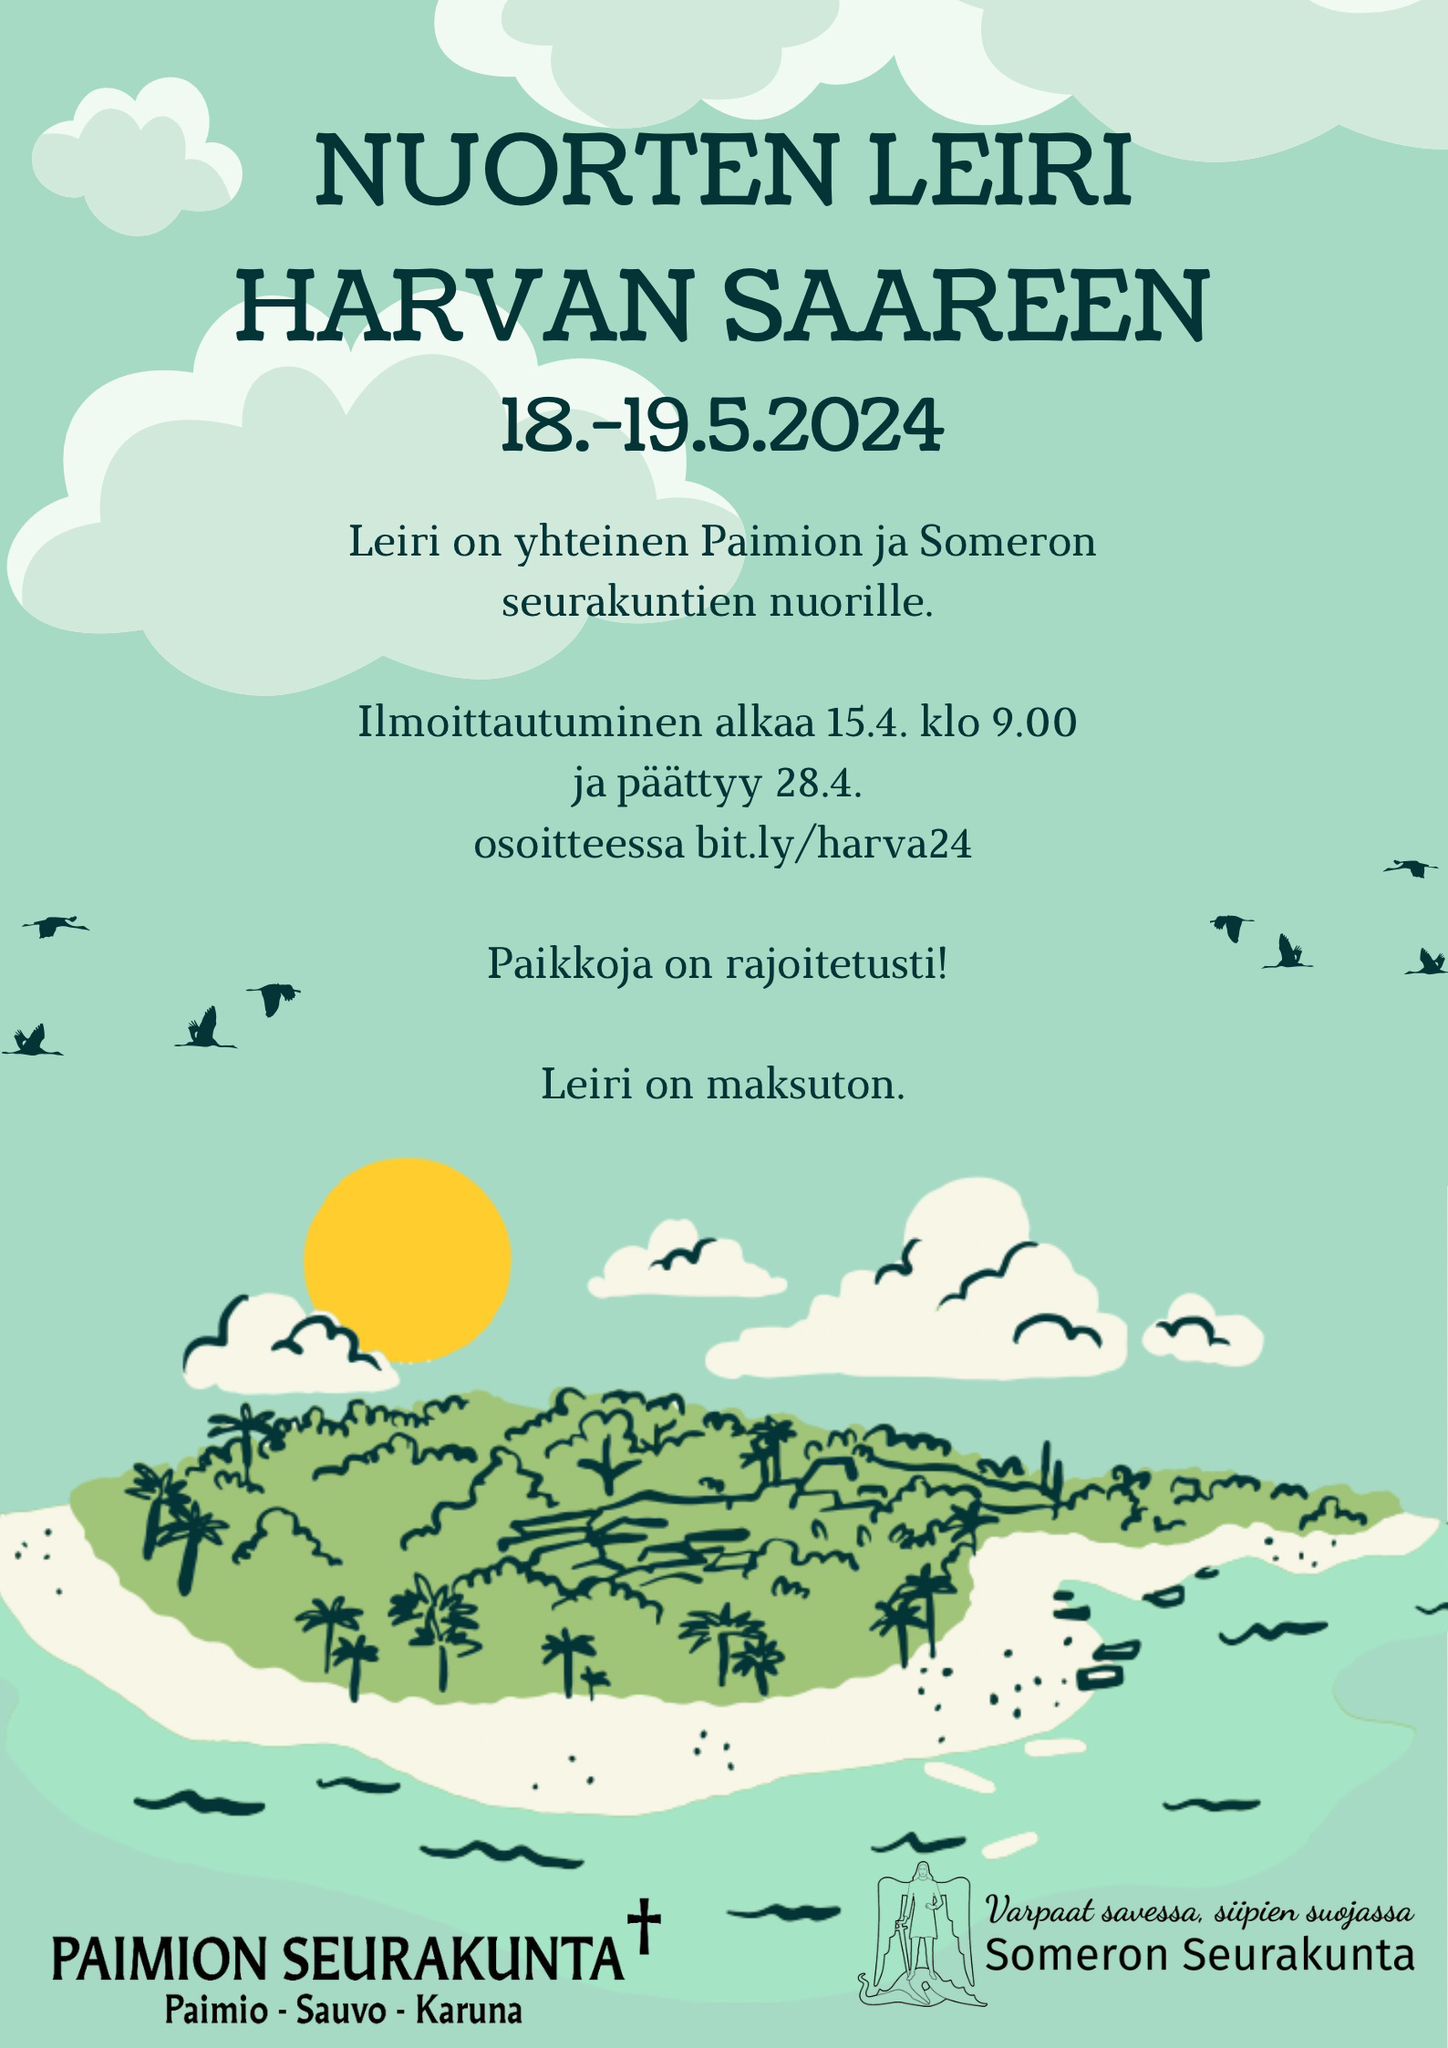 Nuorten leiri Harvan saareen 18-19.5.2024
ilmoittautuminen osoitteessa bit.ly/harva24
leiri on maksuton